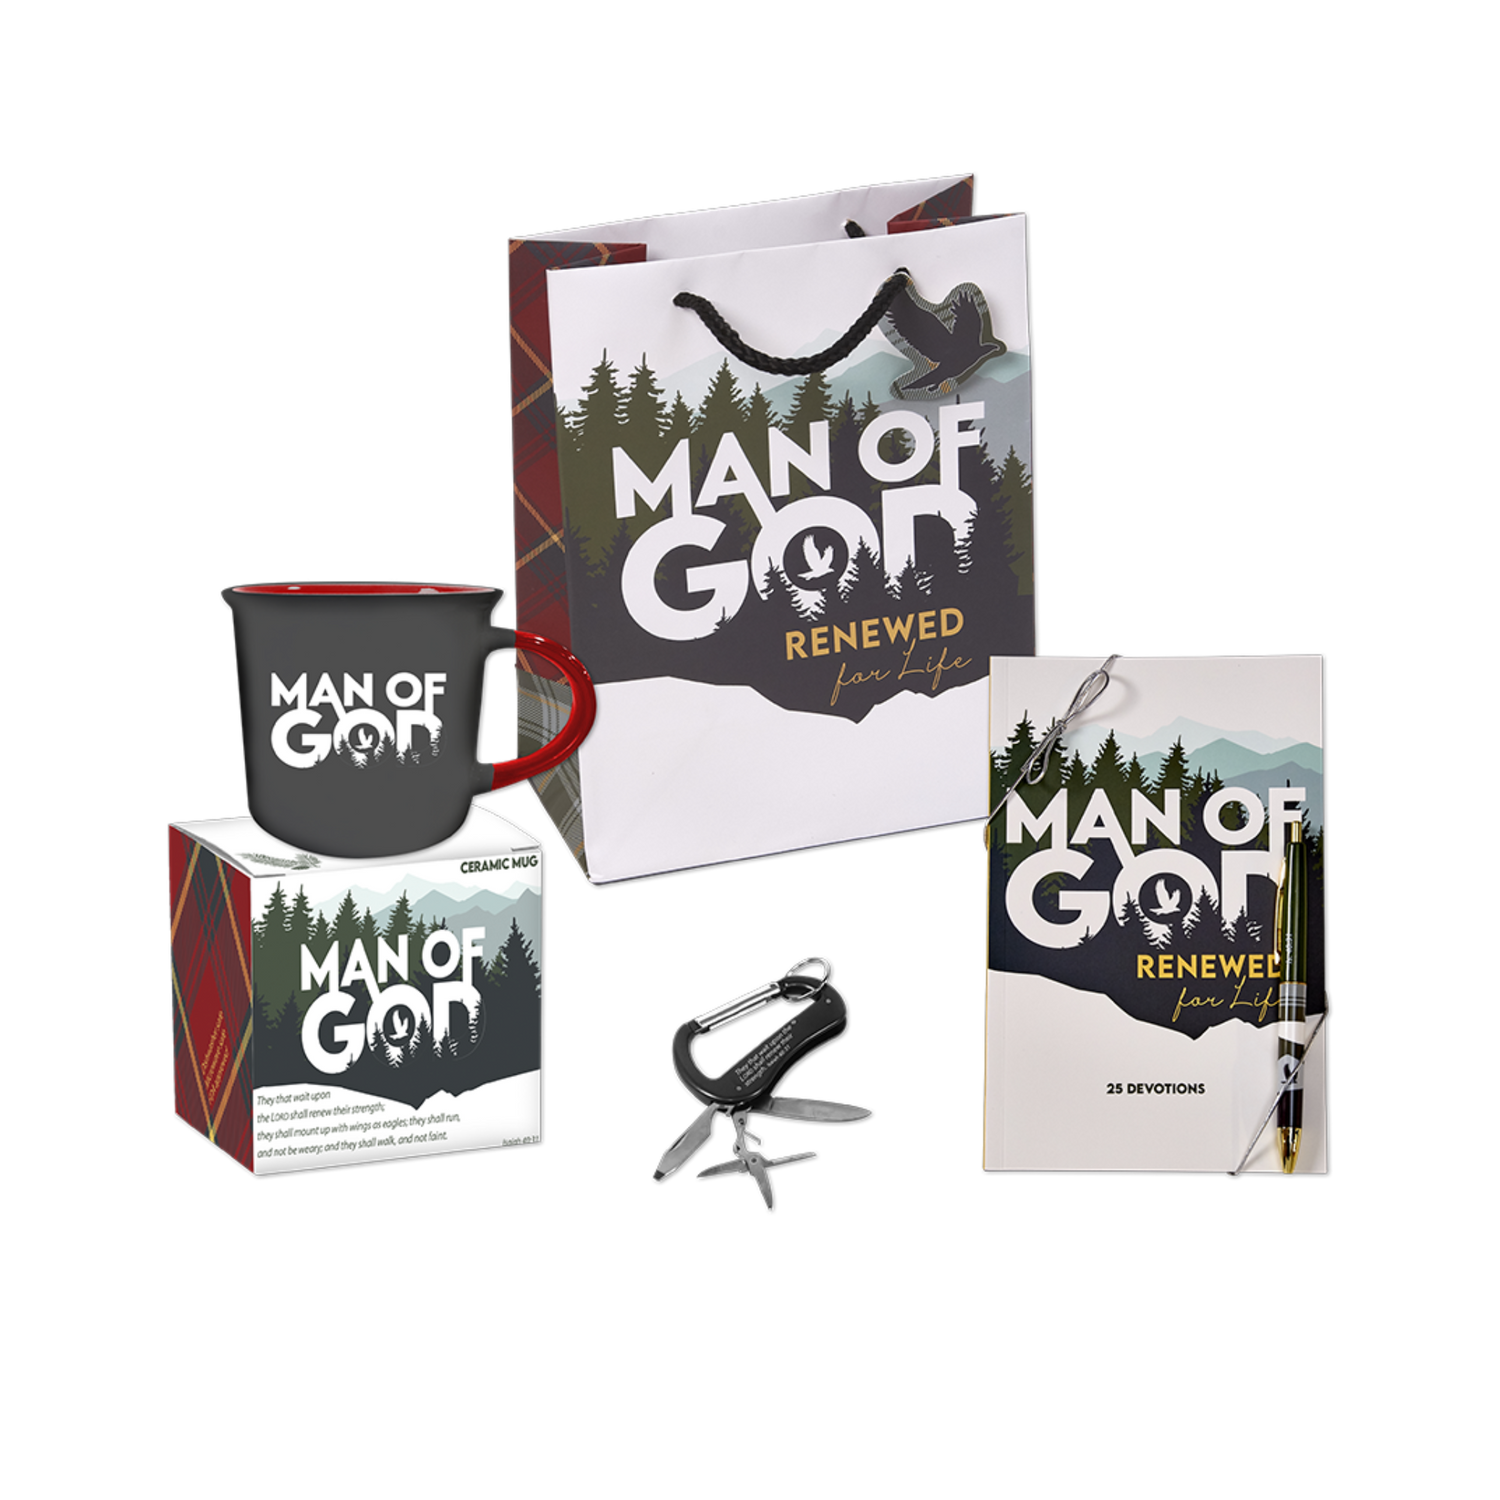 Man of God Renewed for Life Gift Set with Mug & Gift Box, Gift Bag, Multi Tool, & Devotion Set